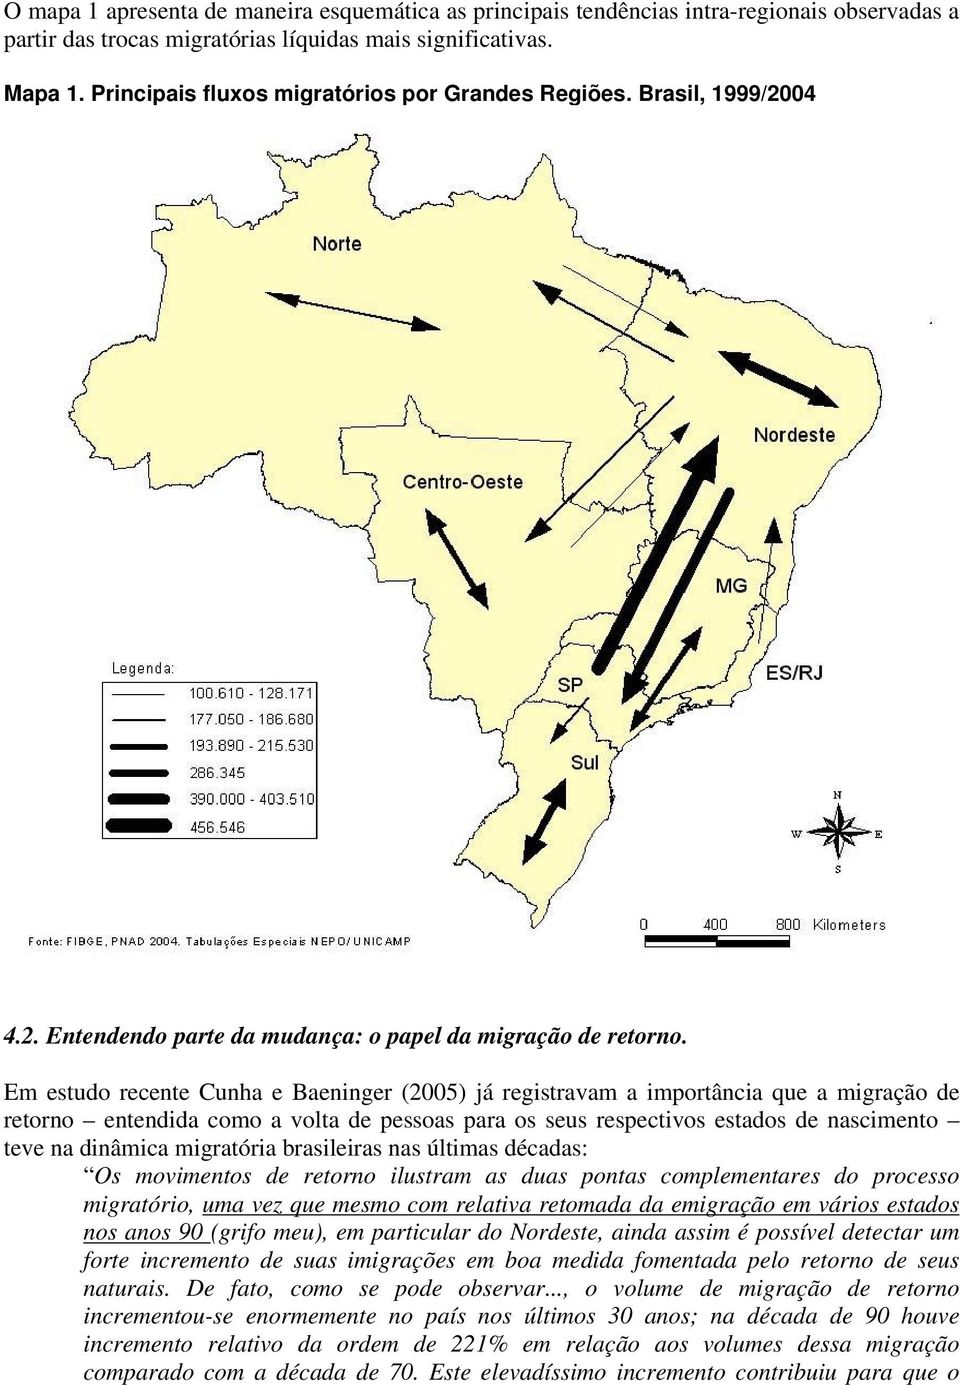 Em estudo recente Cunha e Baeninger (2005) já registravam a importância que a migração de retorno entendida como a volta de pessoas para os seus respectivos estados de nascimento teve na dinâmica